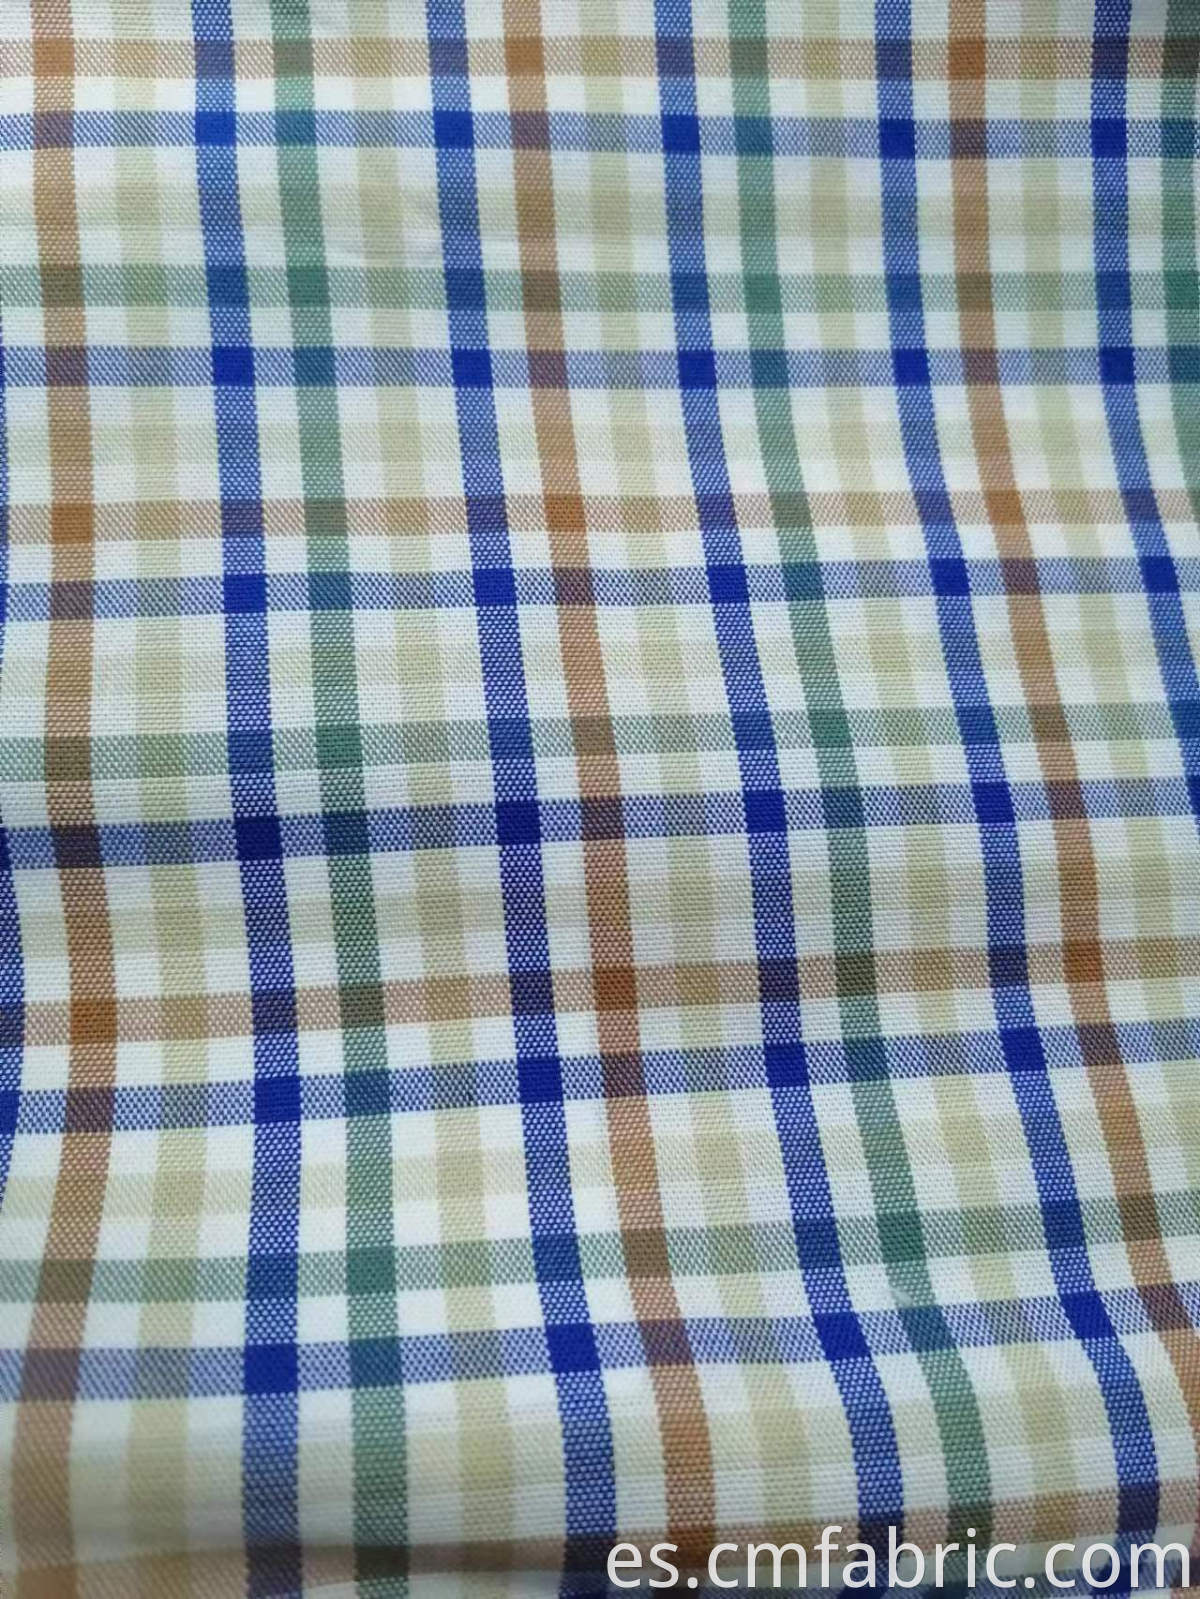 WOVEN 100% Cotton yarn dyd man shirt fabric 2